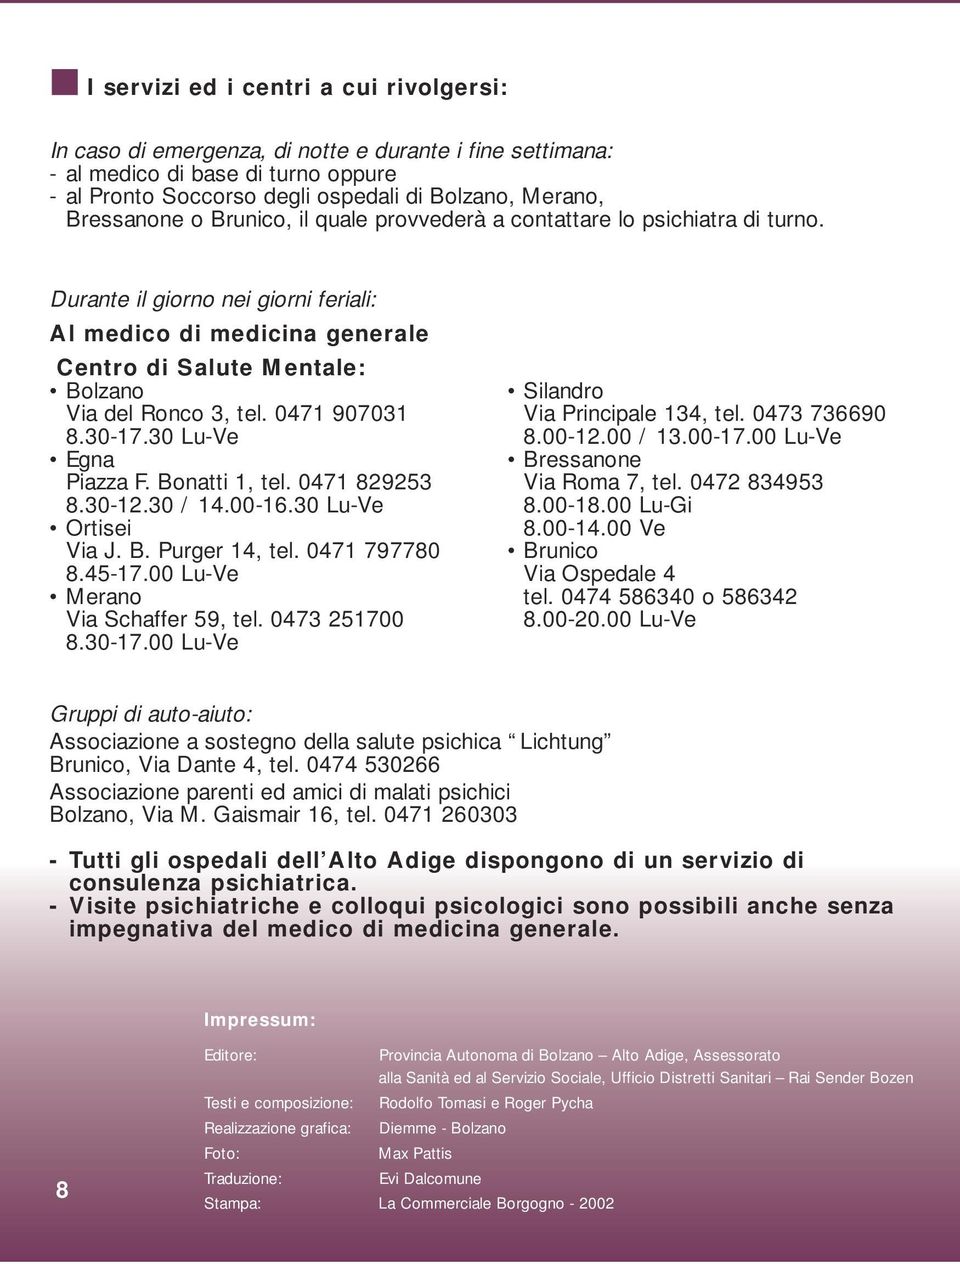 Durante il giorno nei giorni feriali: Al medico di medicina generale Centro di Salute Mentale: Bolzano Via del Ronco 3, tel. 0471 907031 8.30-17.30 Lu-Ve Egna Piazza F. Bonatti 1, tel. 0471 829253 8.